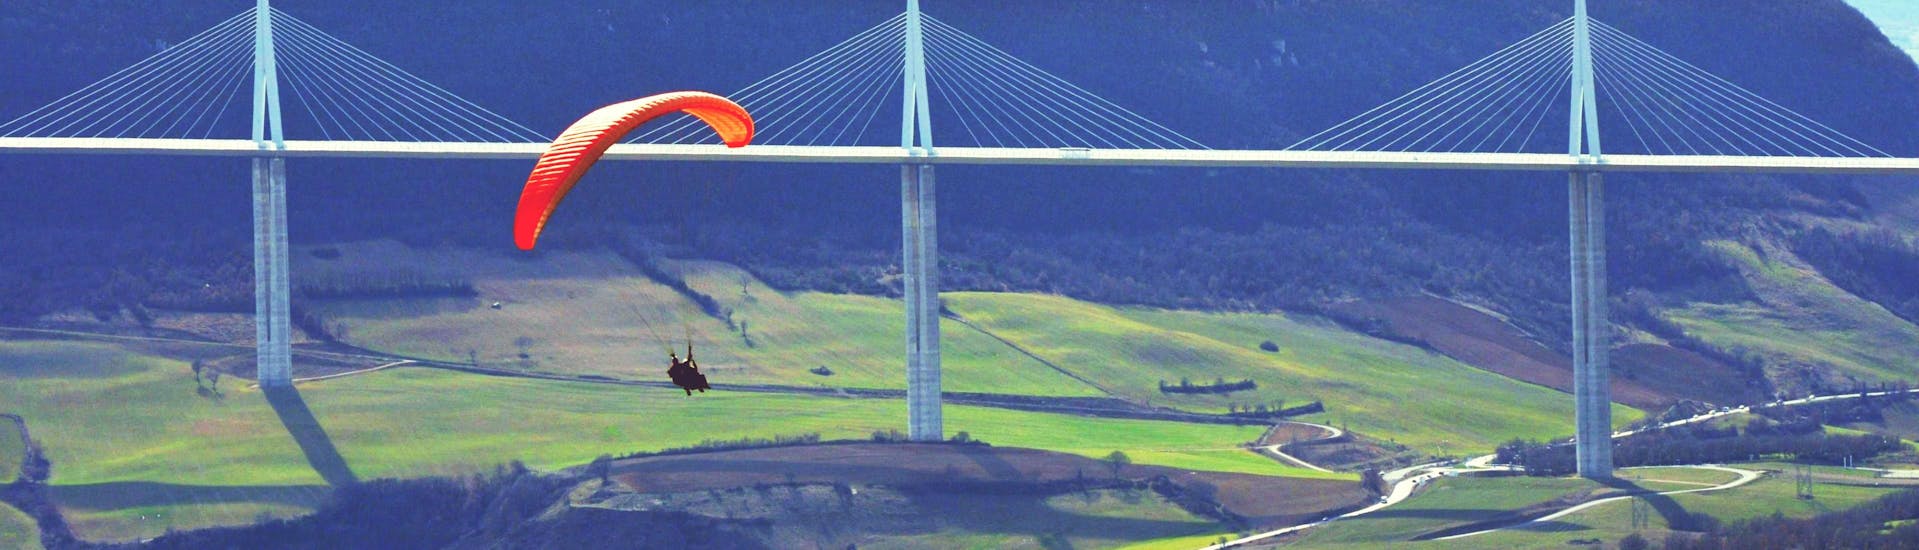 Thermik Tandem Paragliding in Millau (ab 12 J.) - Parc naturel régional des Grands Causses.